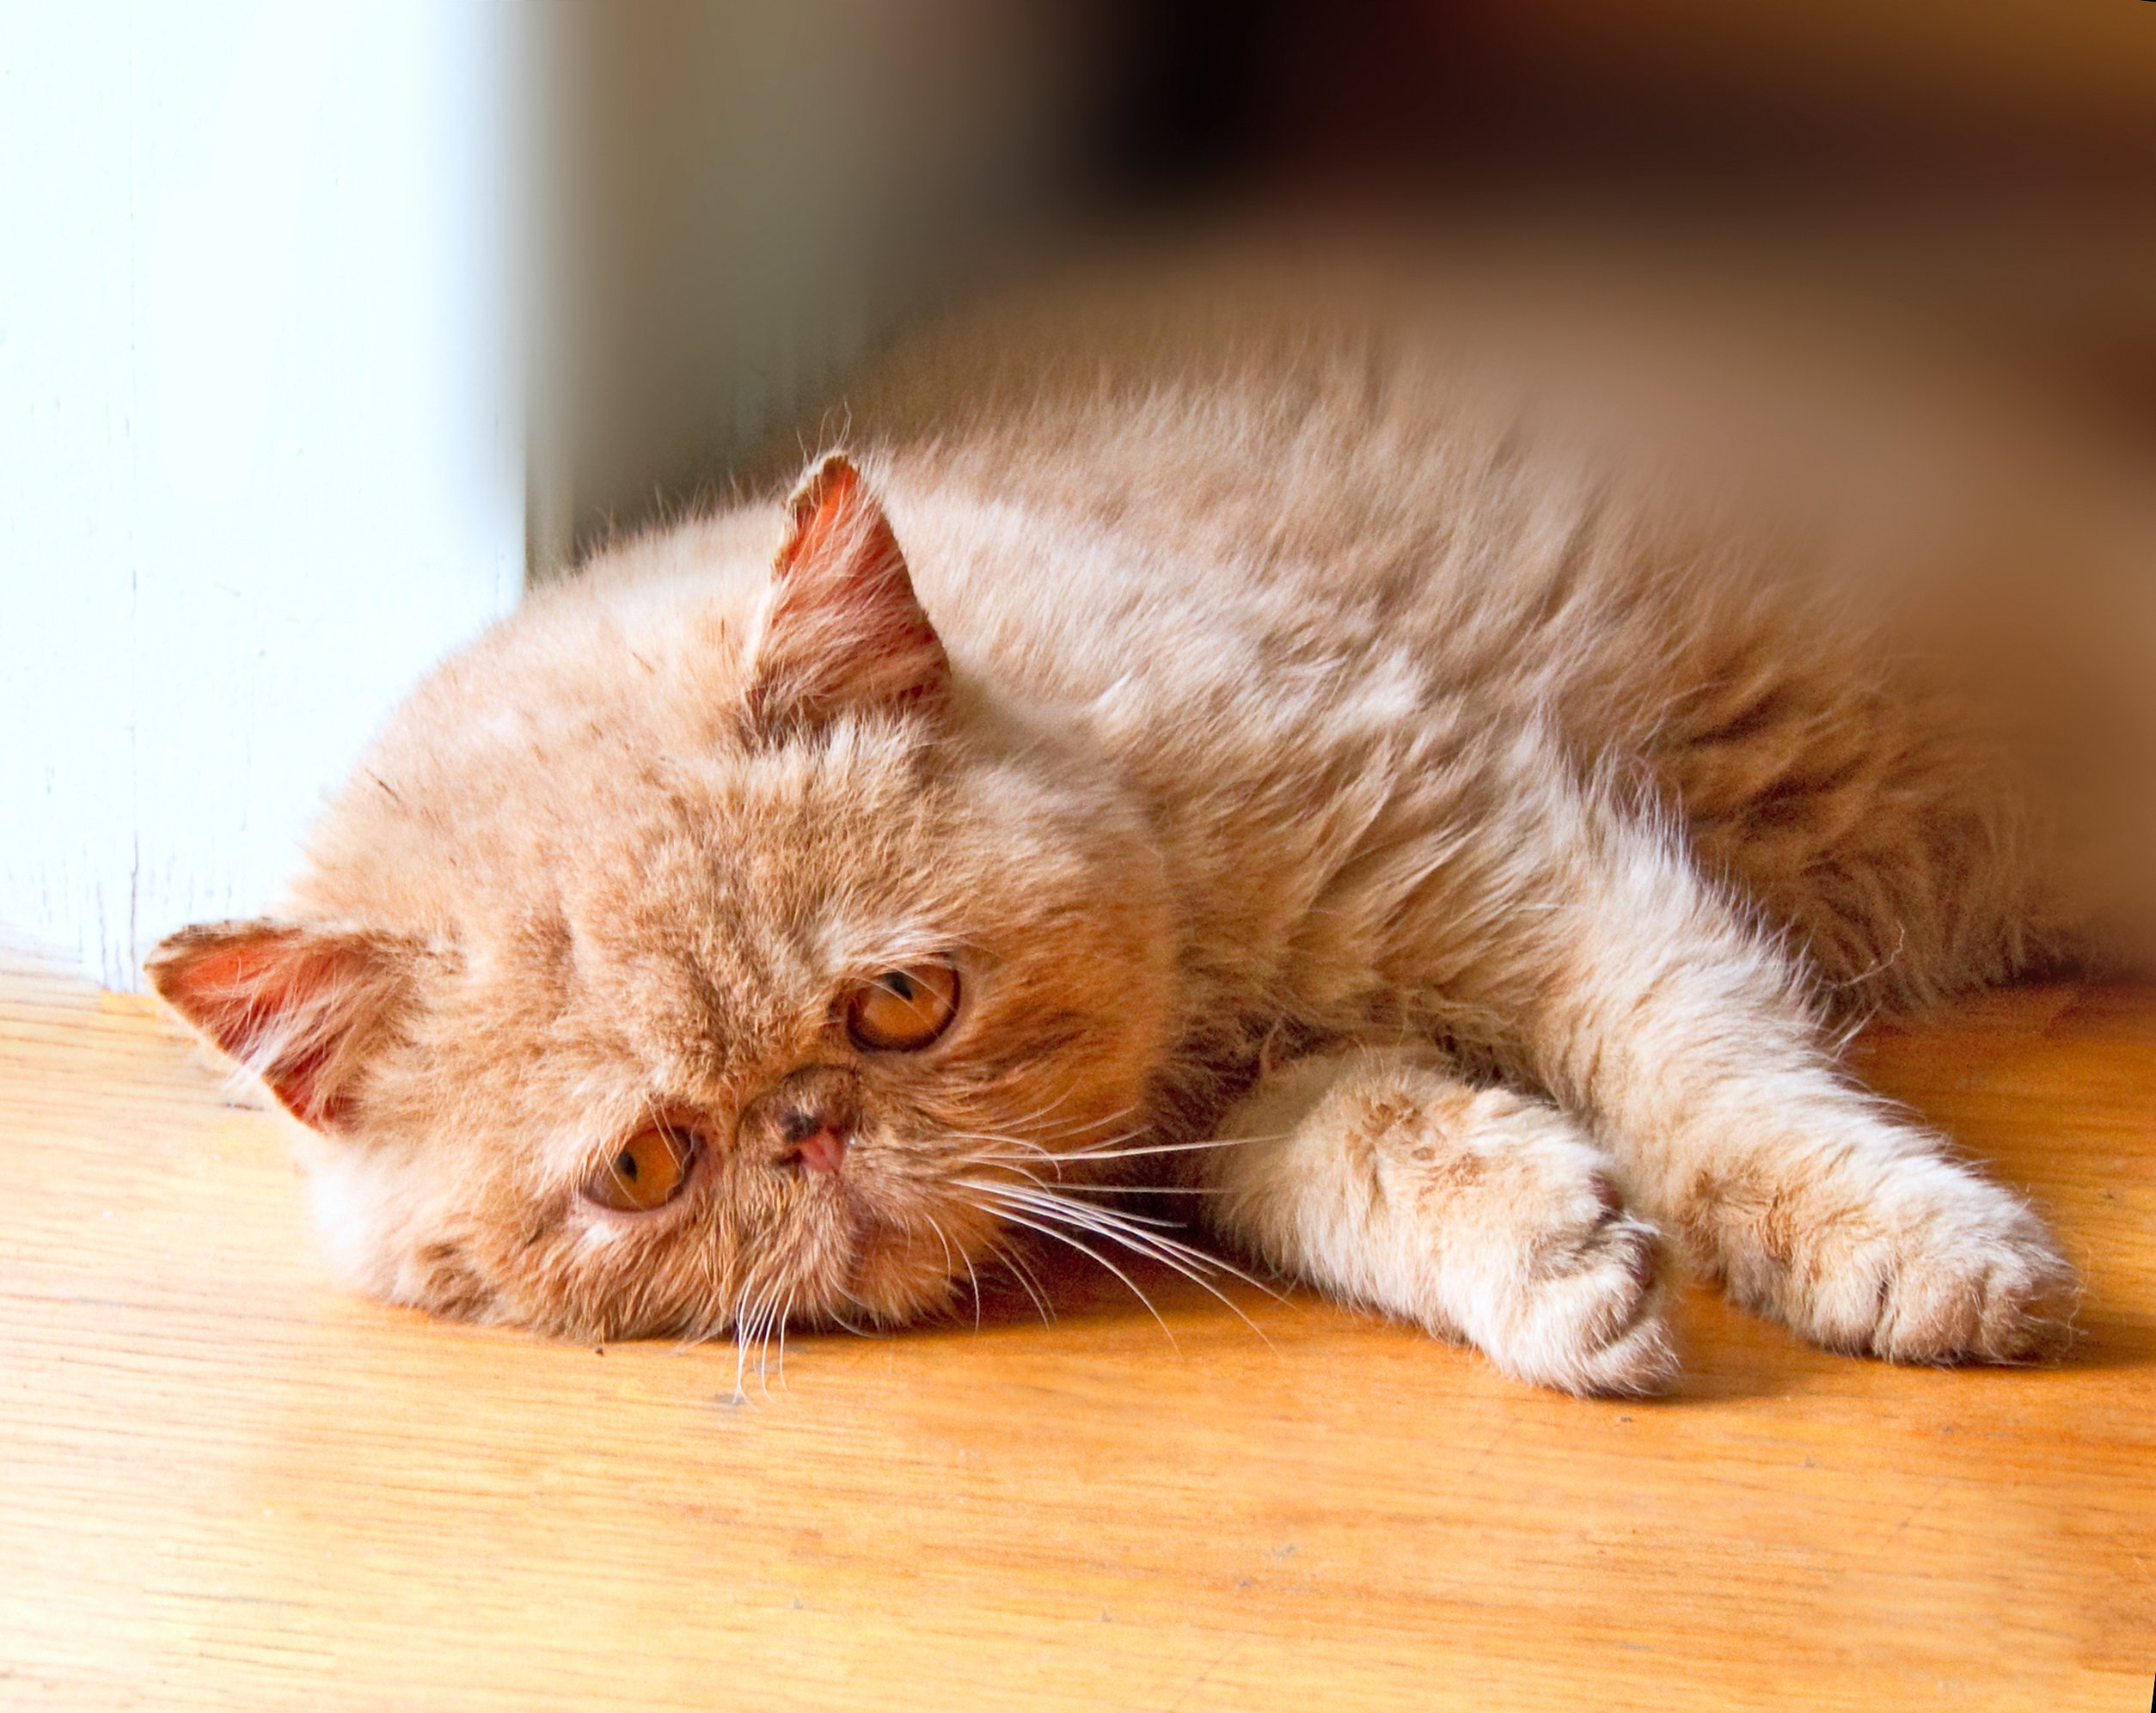 Das arme einsame Kätzchen liegt auf dem Boden und wartet darauf, dass seine Freunde zurückkommen | Quelle: Shutterstock